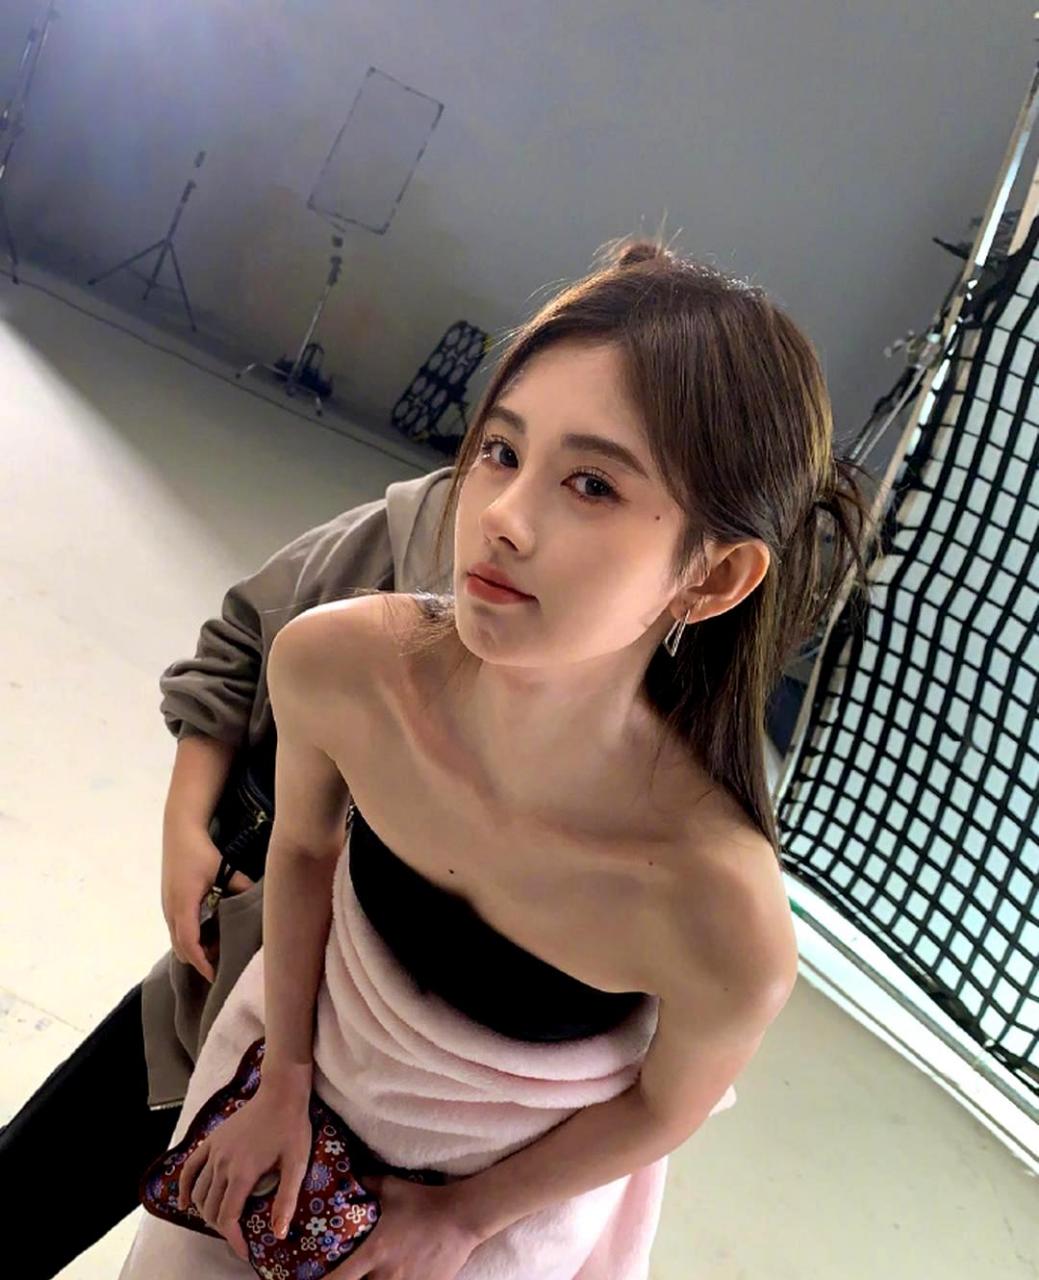 鞠婧祎在微博上分享了一组日常随拍美照,她身穿黑色抹胸裙,对着镜子